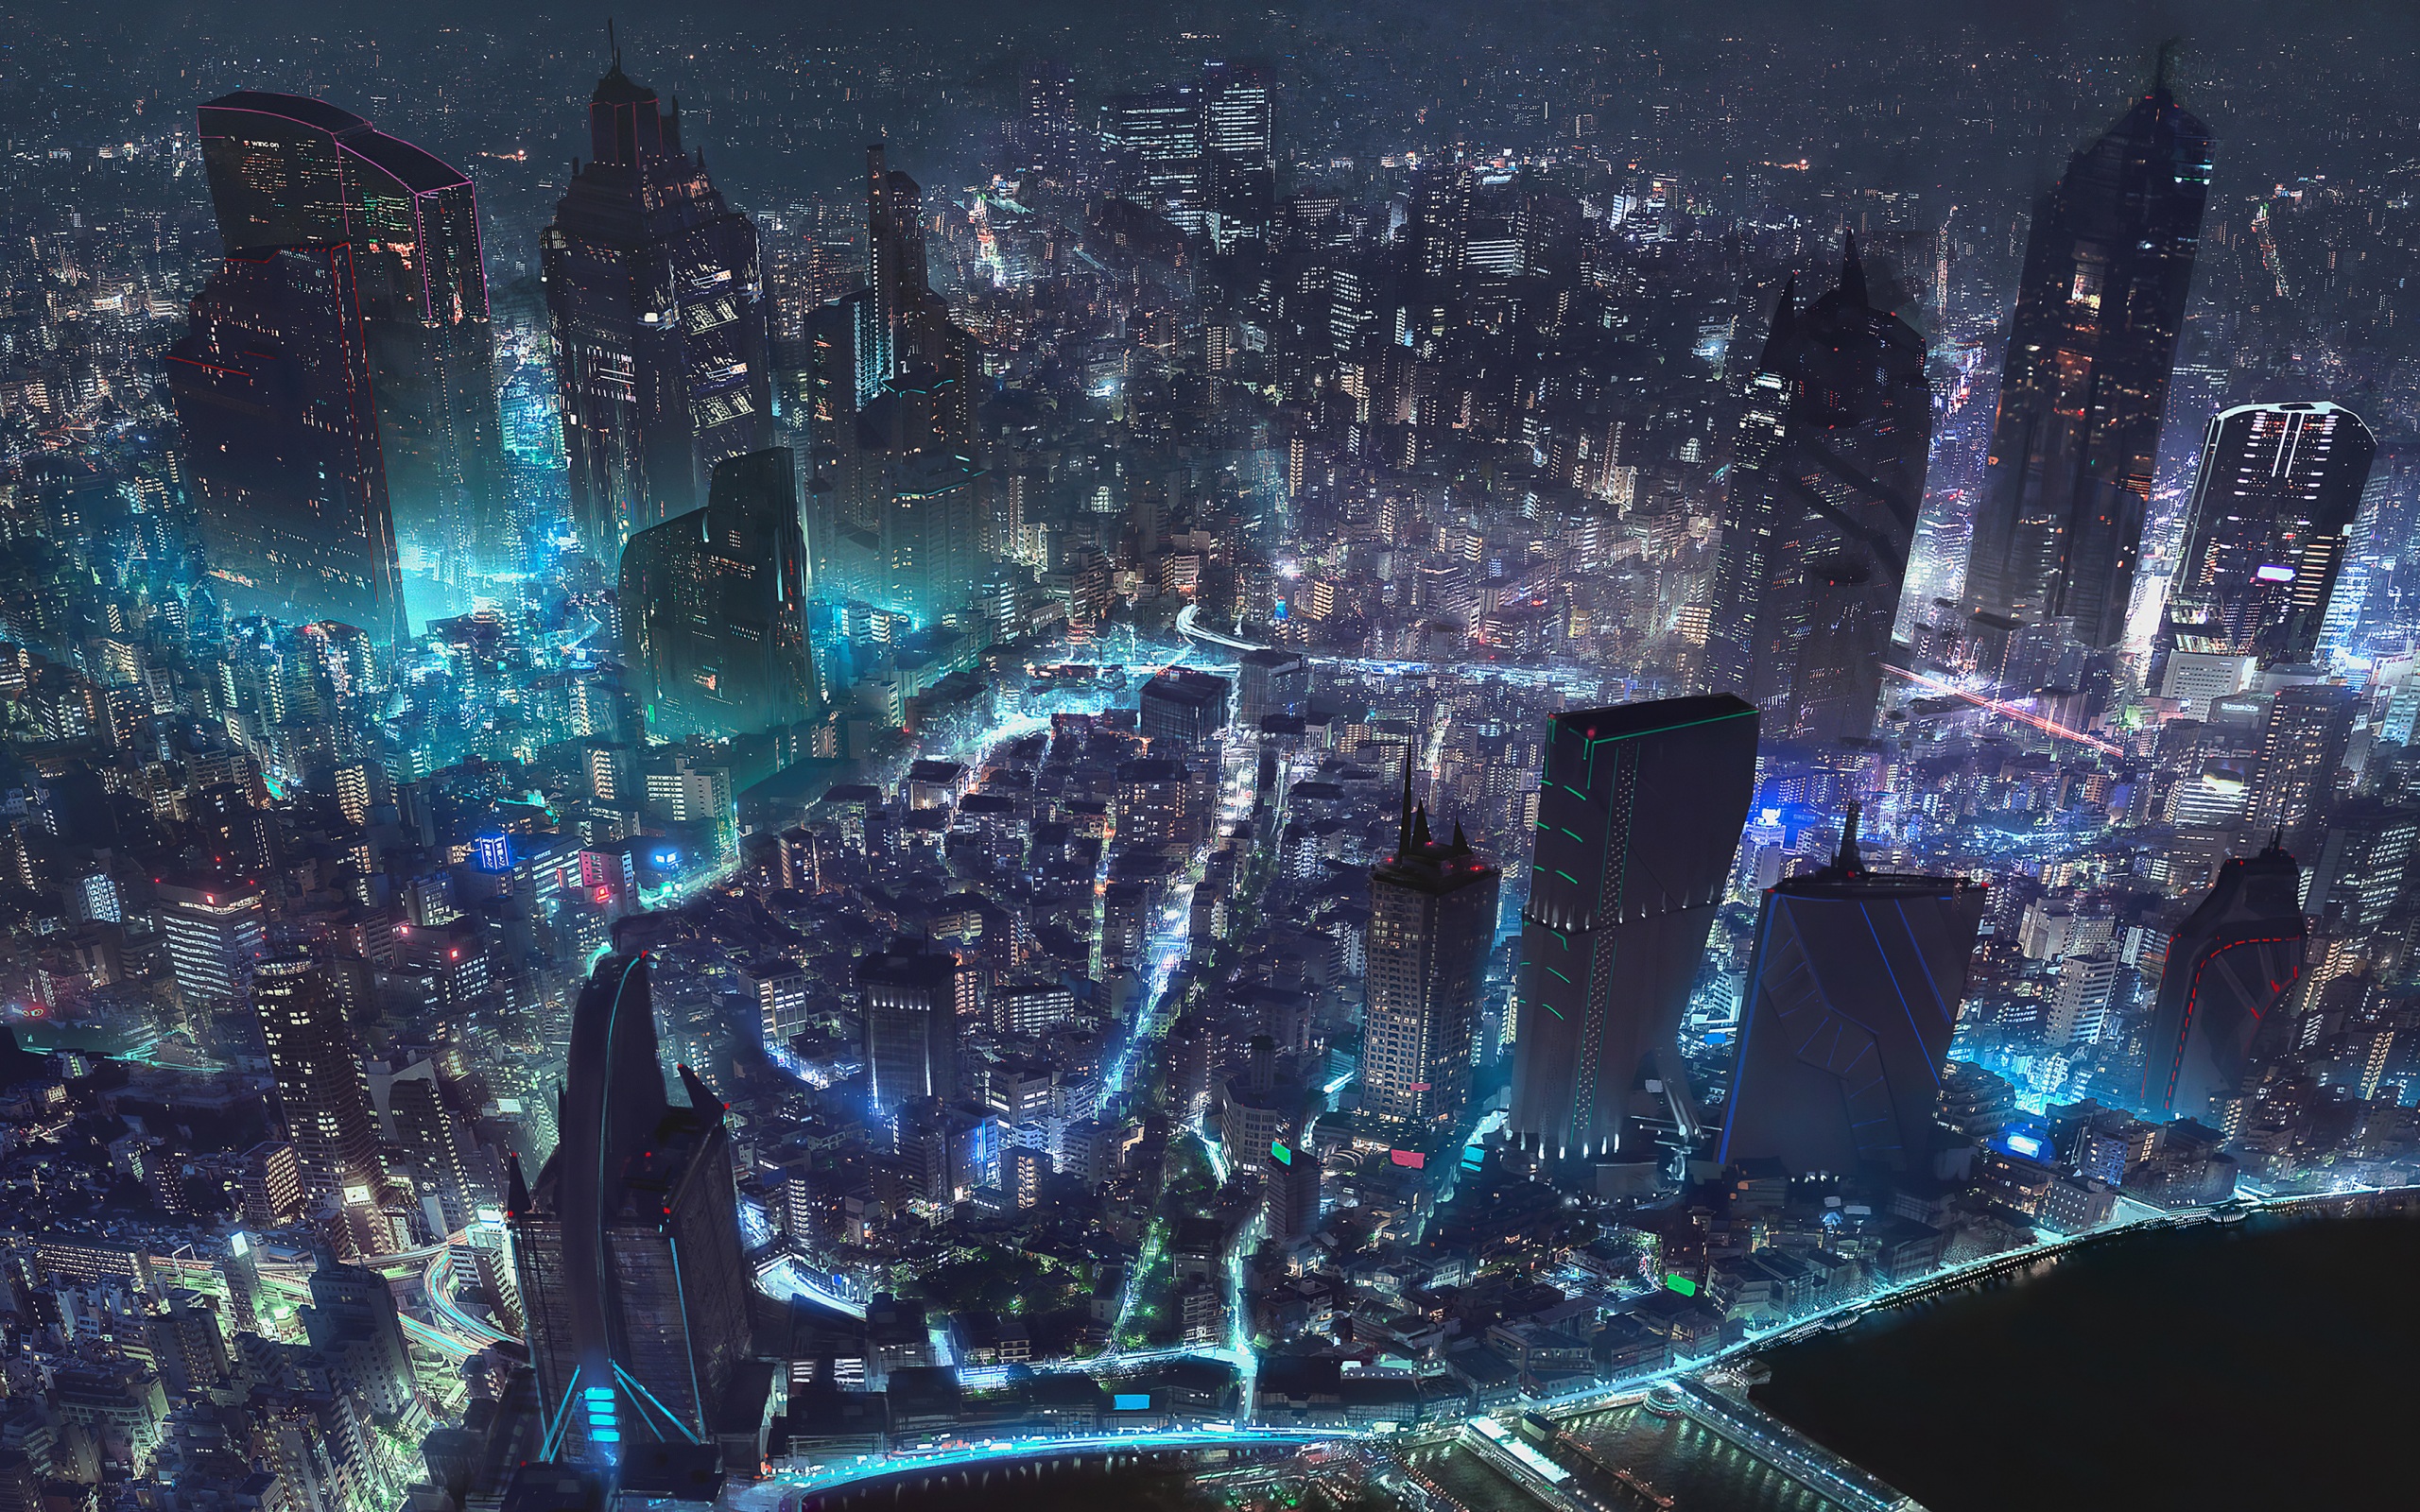 Bản đồ thế giới Cyberpunk thành phố nền 4k: Hãy đặt chân vào một thế giới tương lai đầy mê hoặc và toàn bộ được thể hiện qua một bản đồ tuyệt đẹp. Với độ phân giải 4k, bạn được đắm mình trong không gian đầy sáng tạo của những chi tiết kỹ thuật tinh tế. Tải ngay bản đồ thế giới Cyberpunk thành phố nền 4k và khám phá thế giới máy tính tuyệt đẹp này.